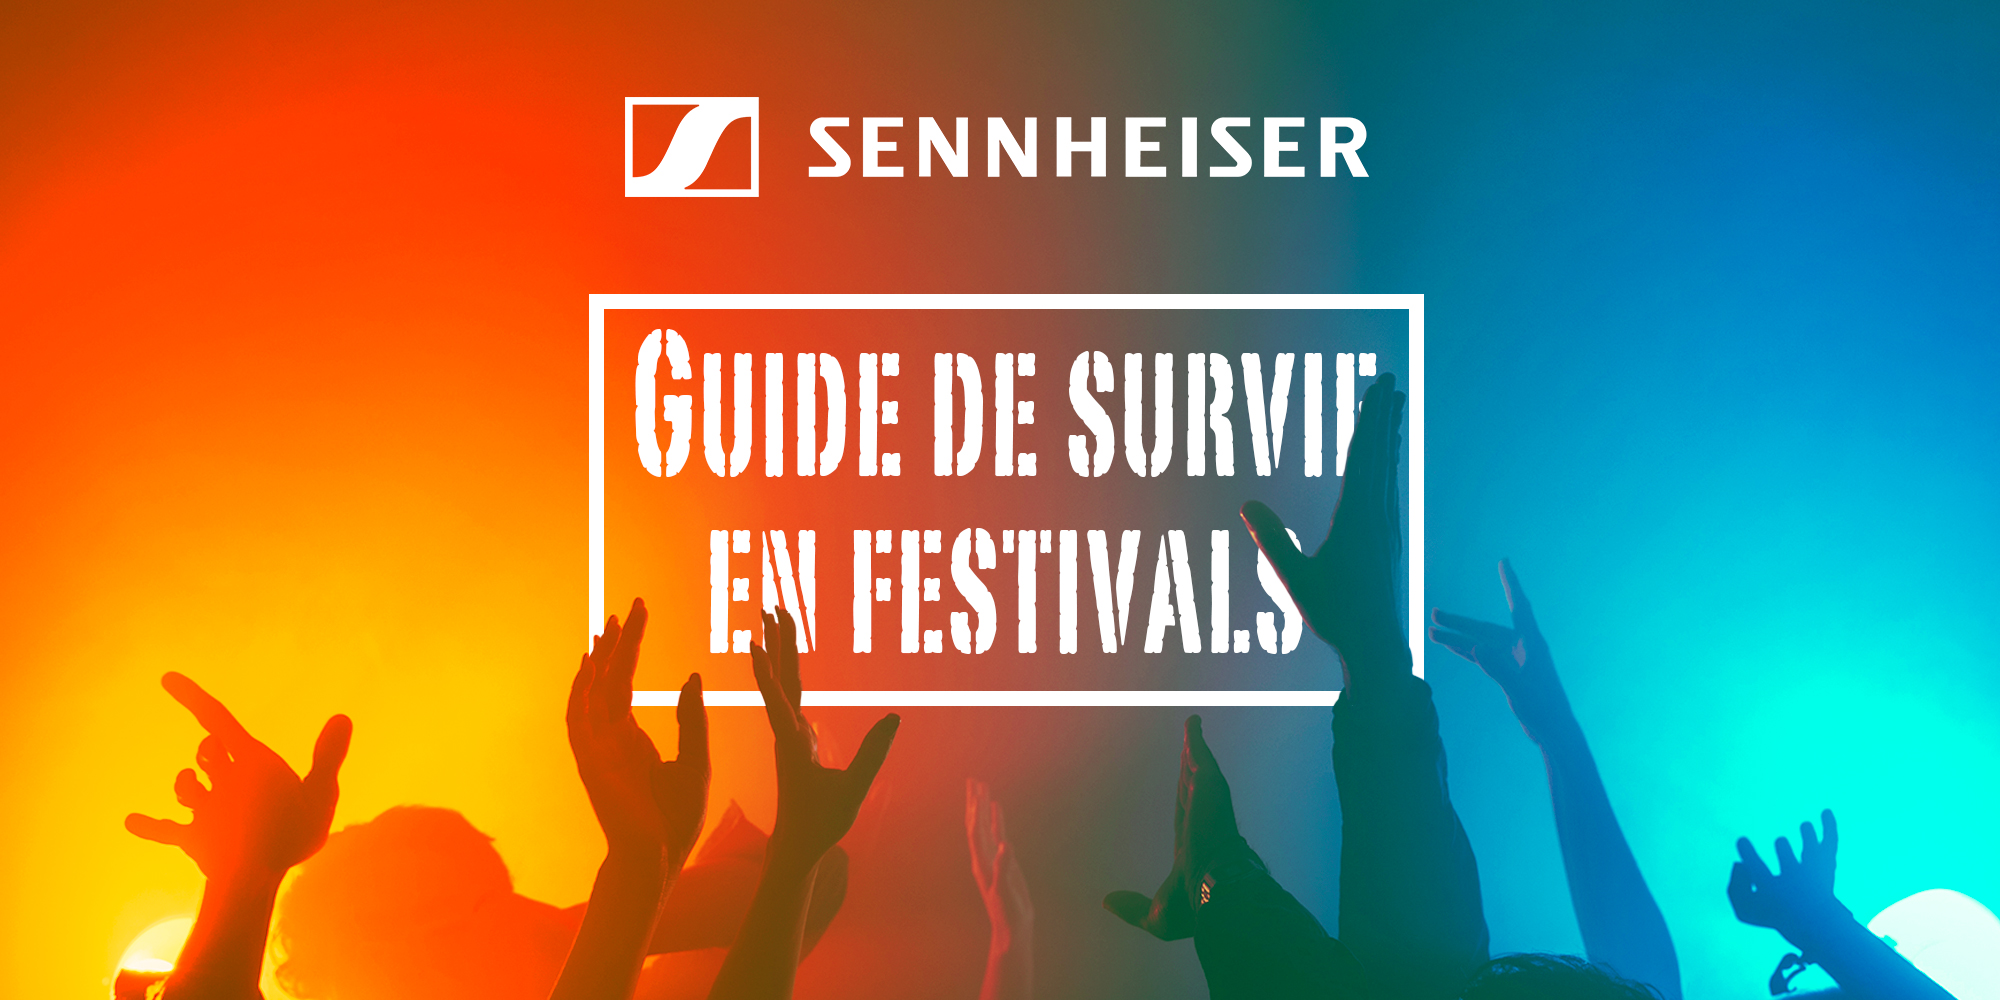  Guide de survie en Festivals par Sennheiser !